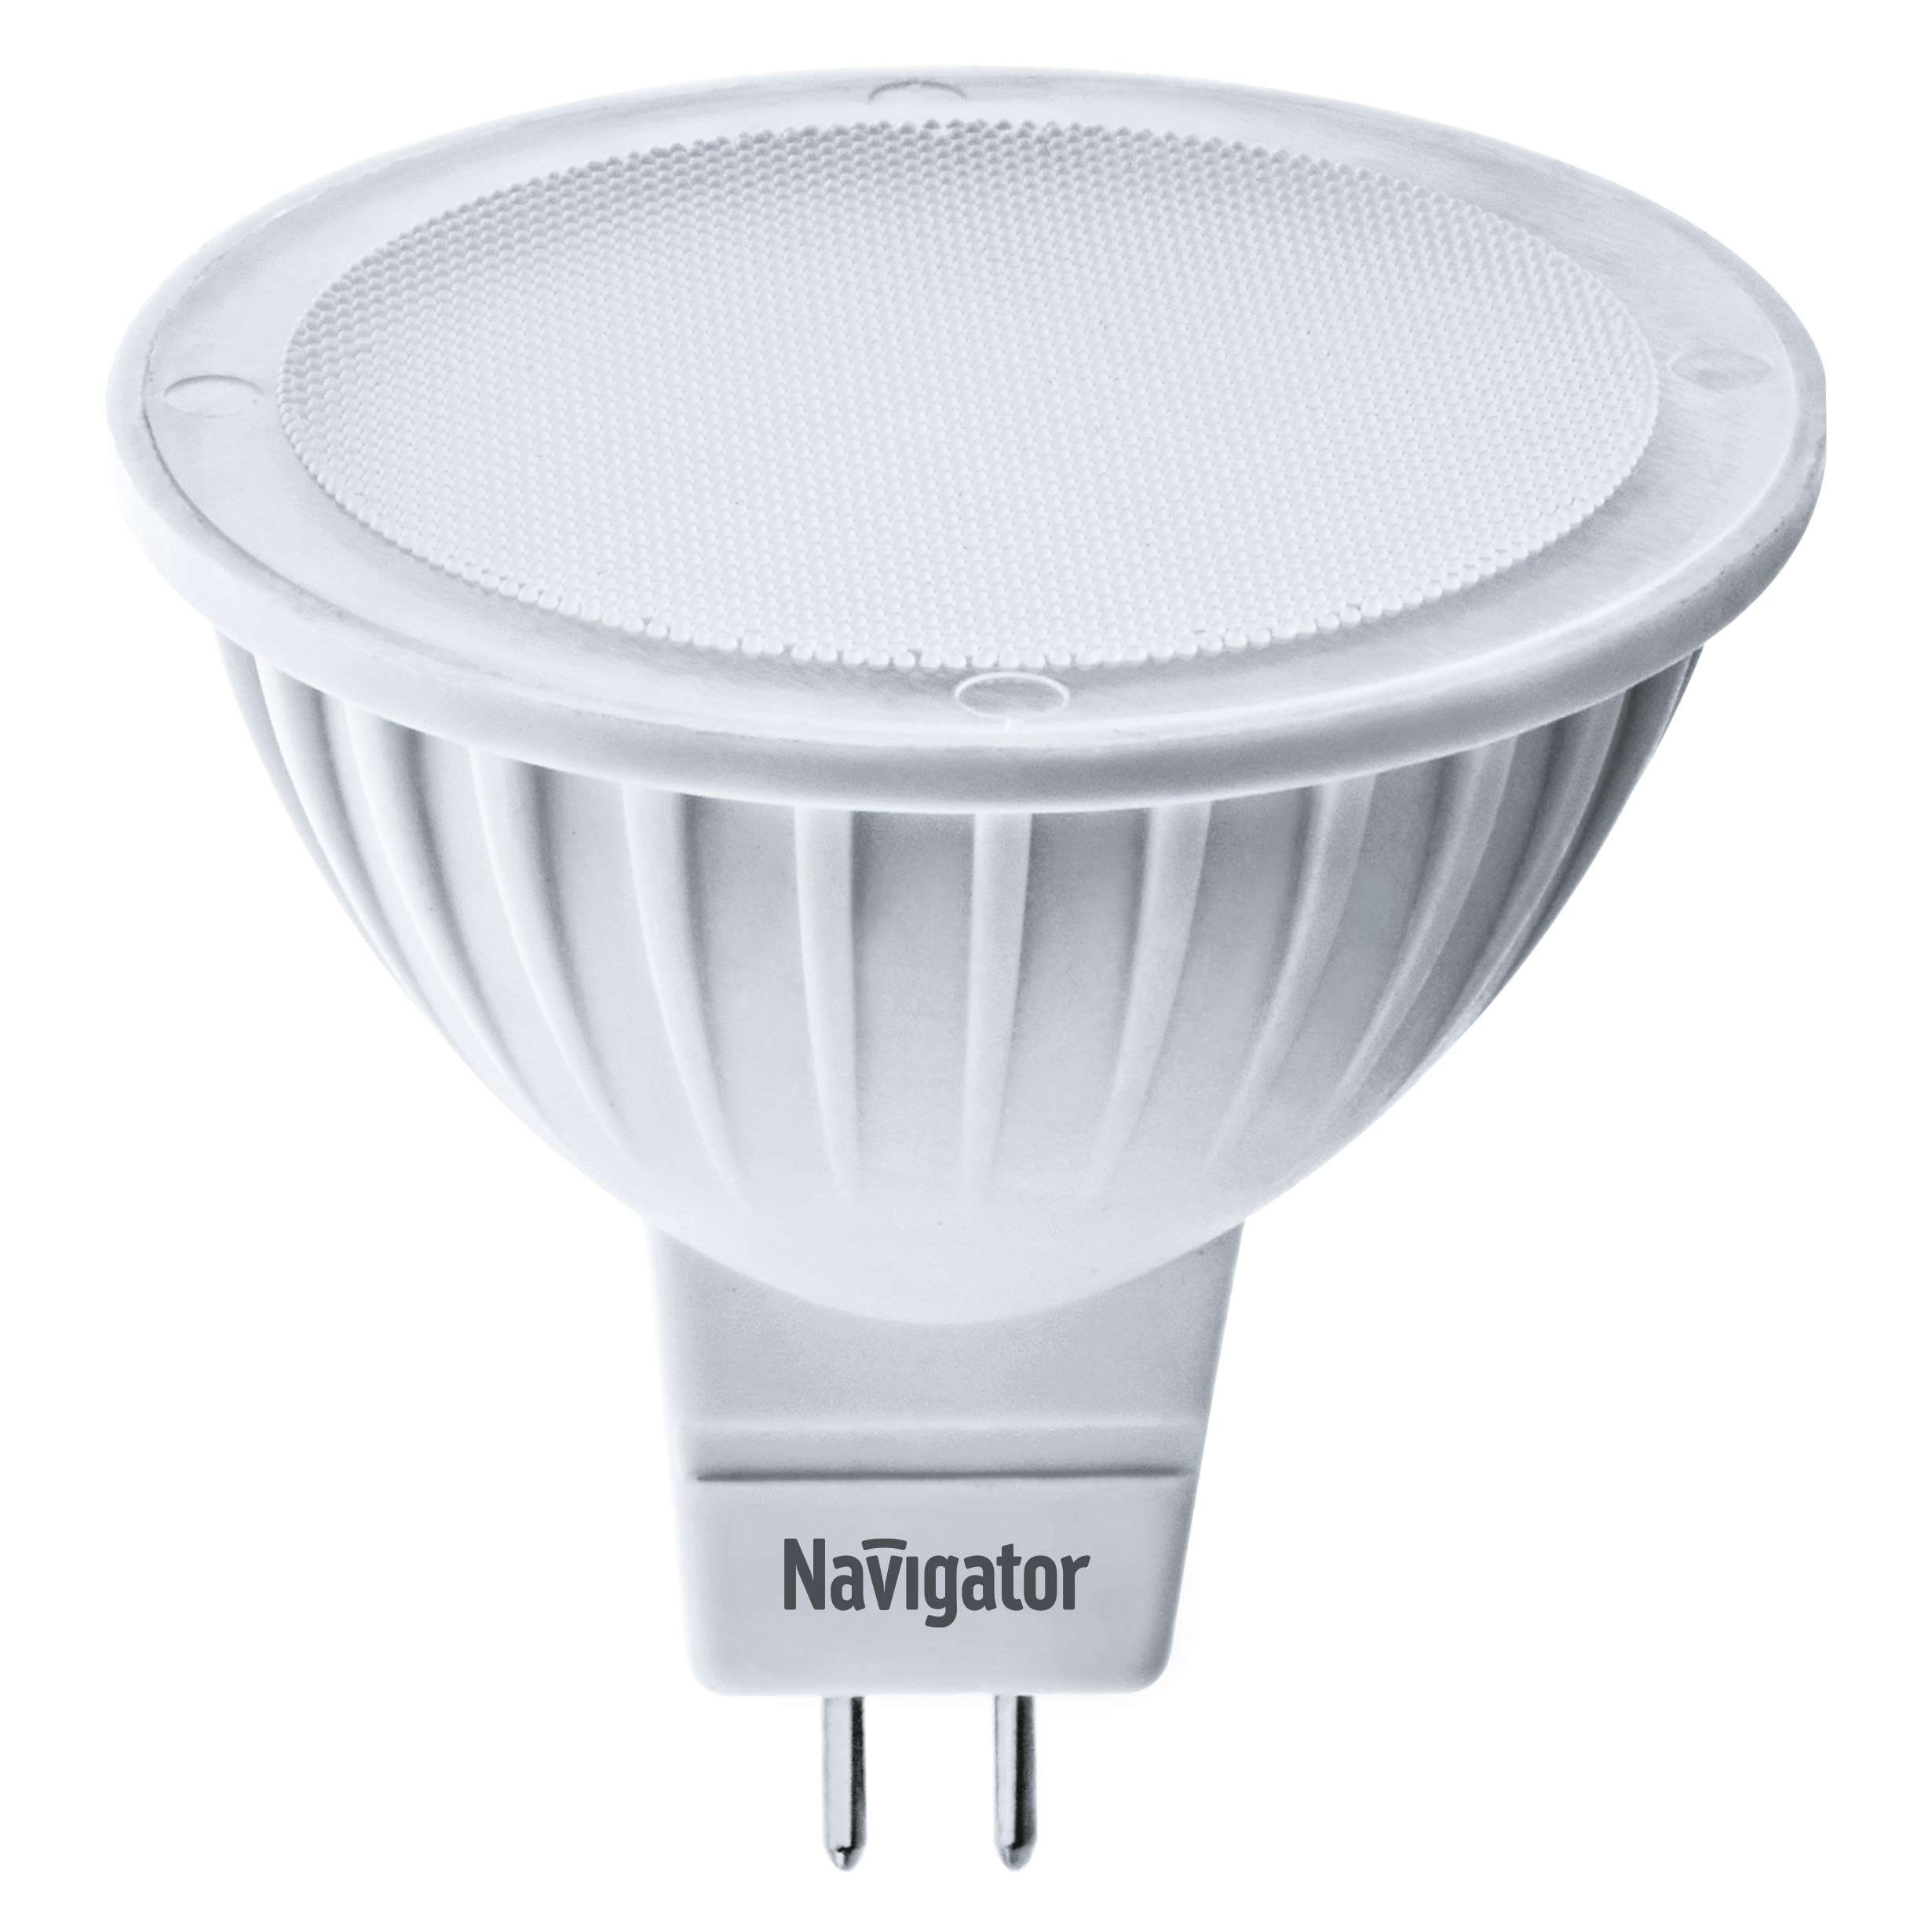 Лампа светодиодная Navigator MR16 5Вт 230В цоколь GU5.3 (холодный свет) лампа светодиодная navigator колба t105 45вт цоколь e40 холодный свет